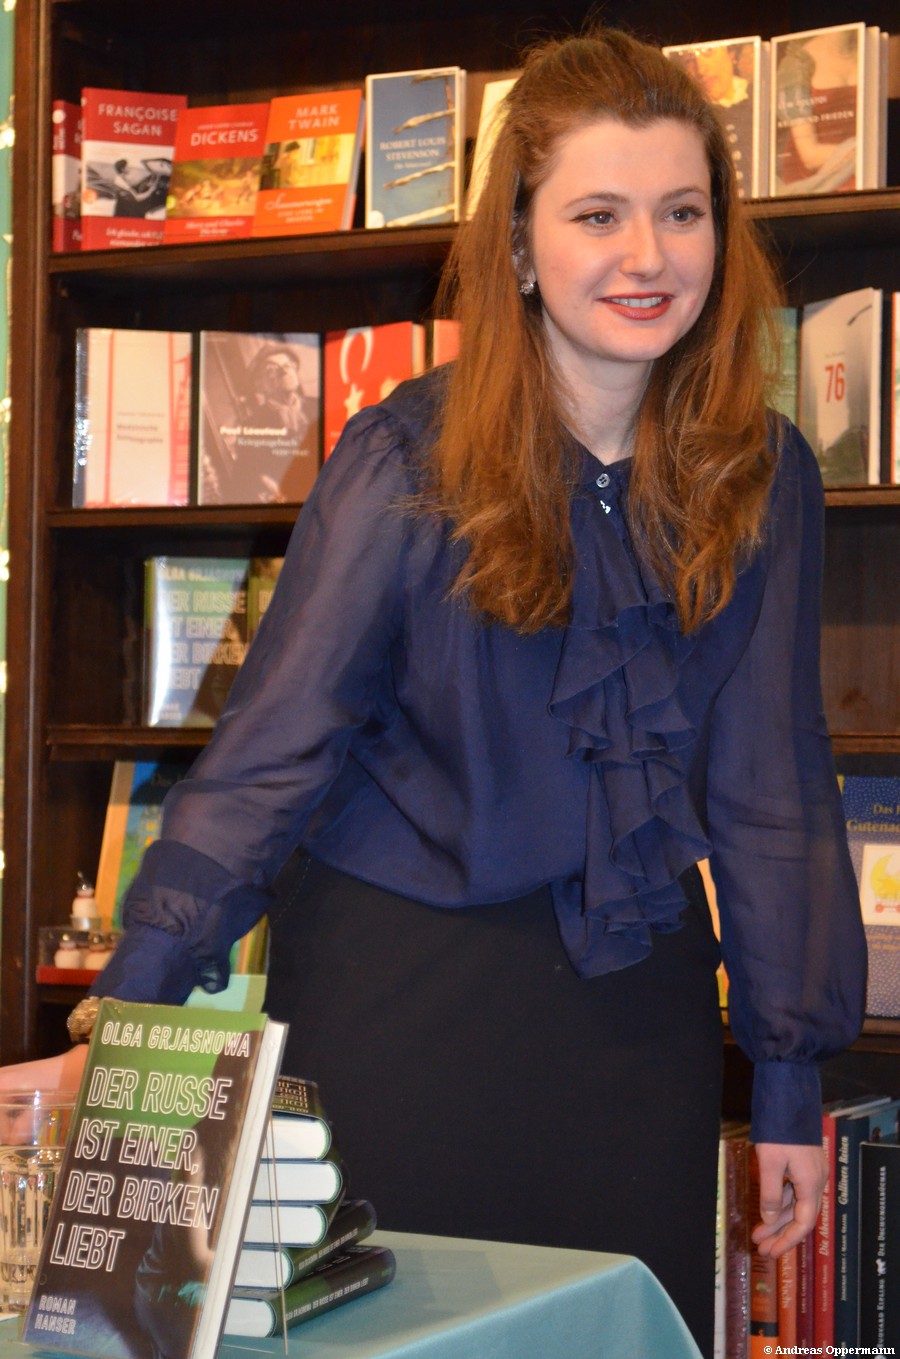 Olga Grjasnowa kurz nach der Lesung von "Der Russe ist einer, der Birken liebt" in der Berliner Buchhandlung "Moby Dick".